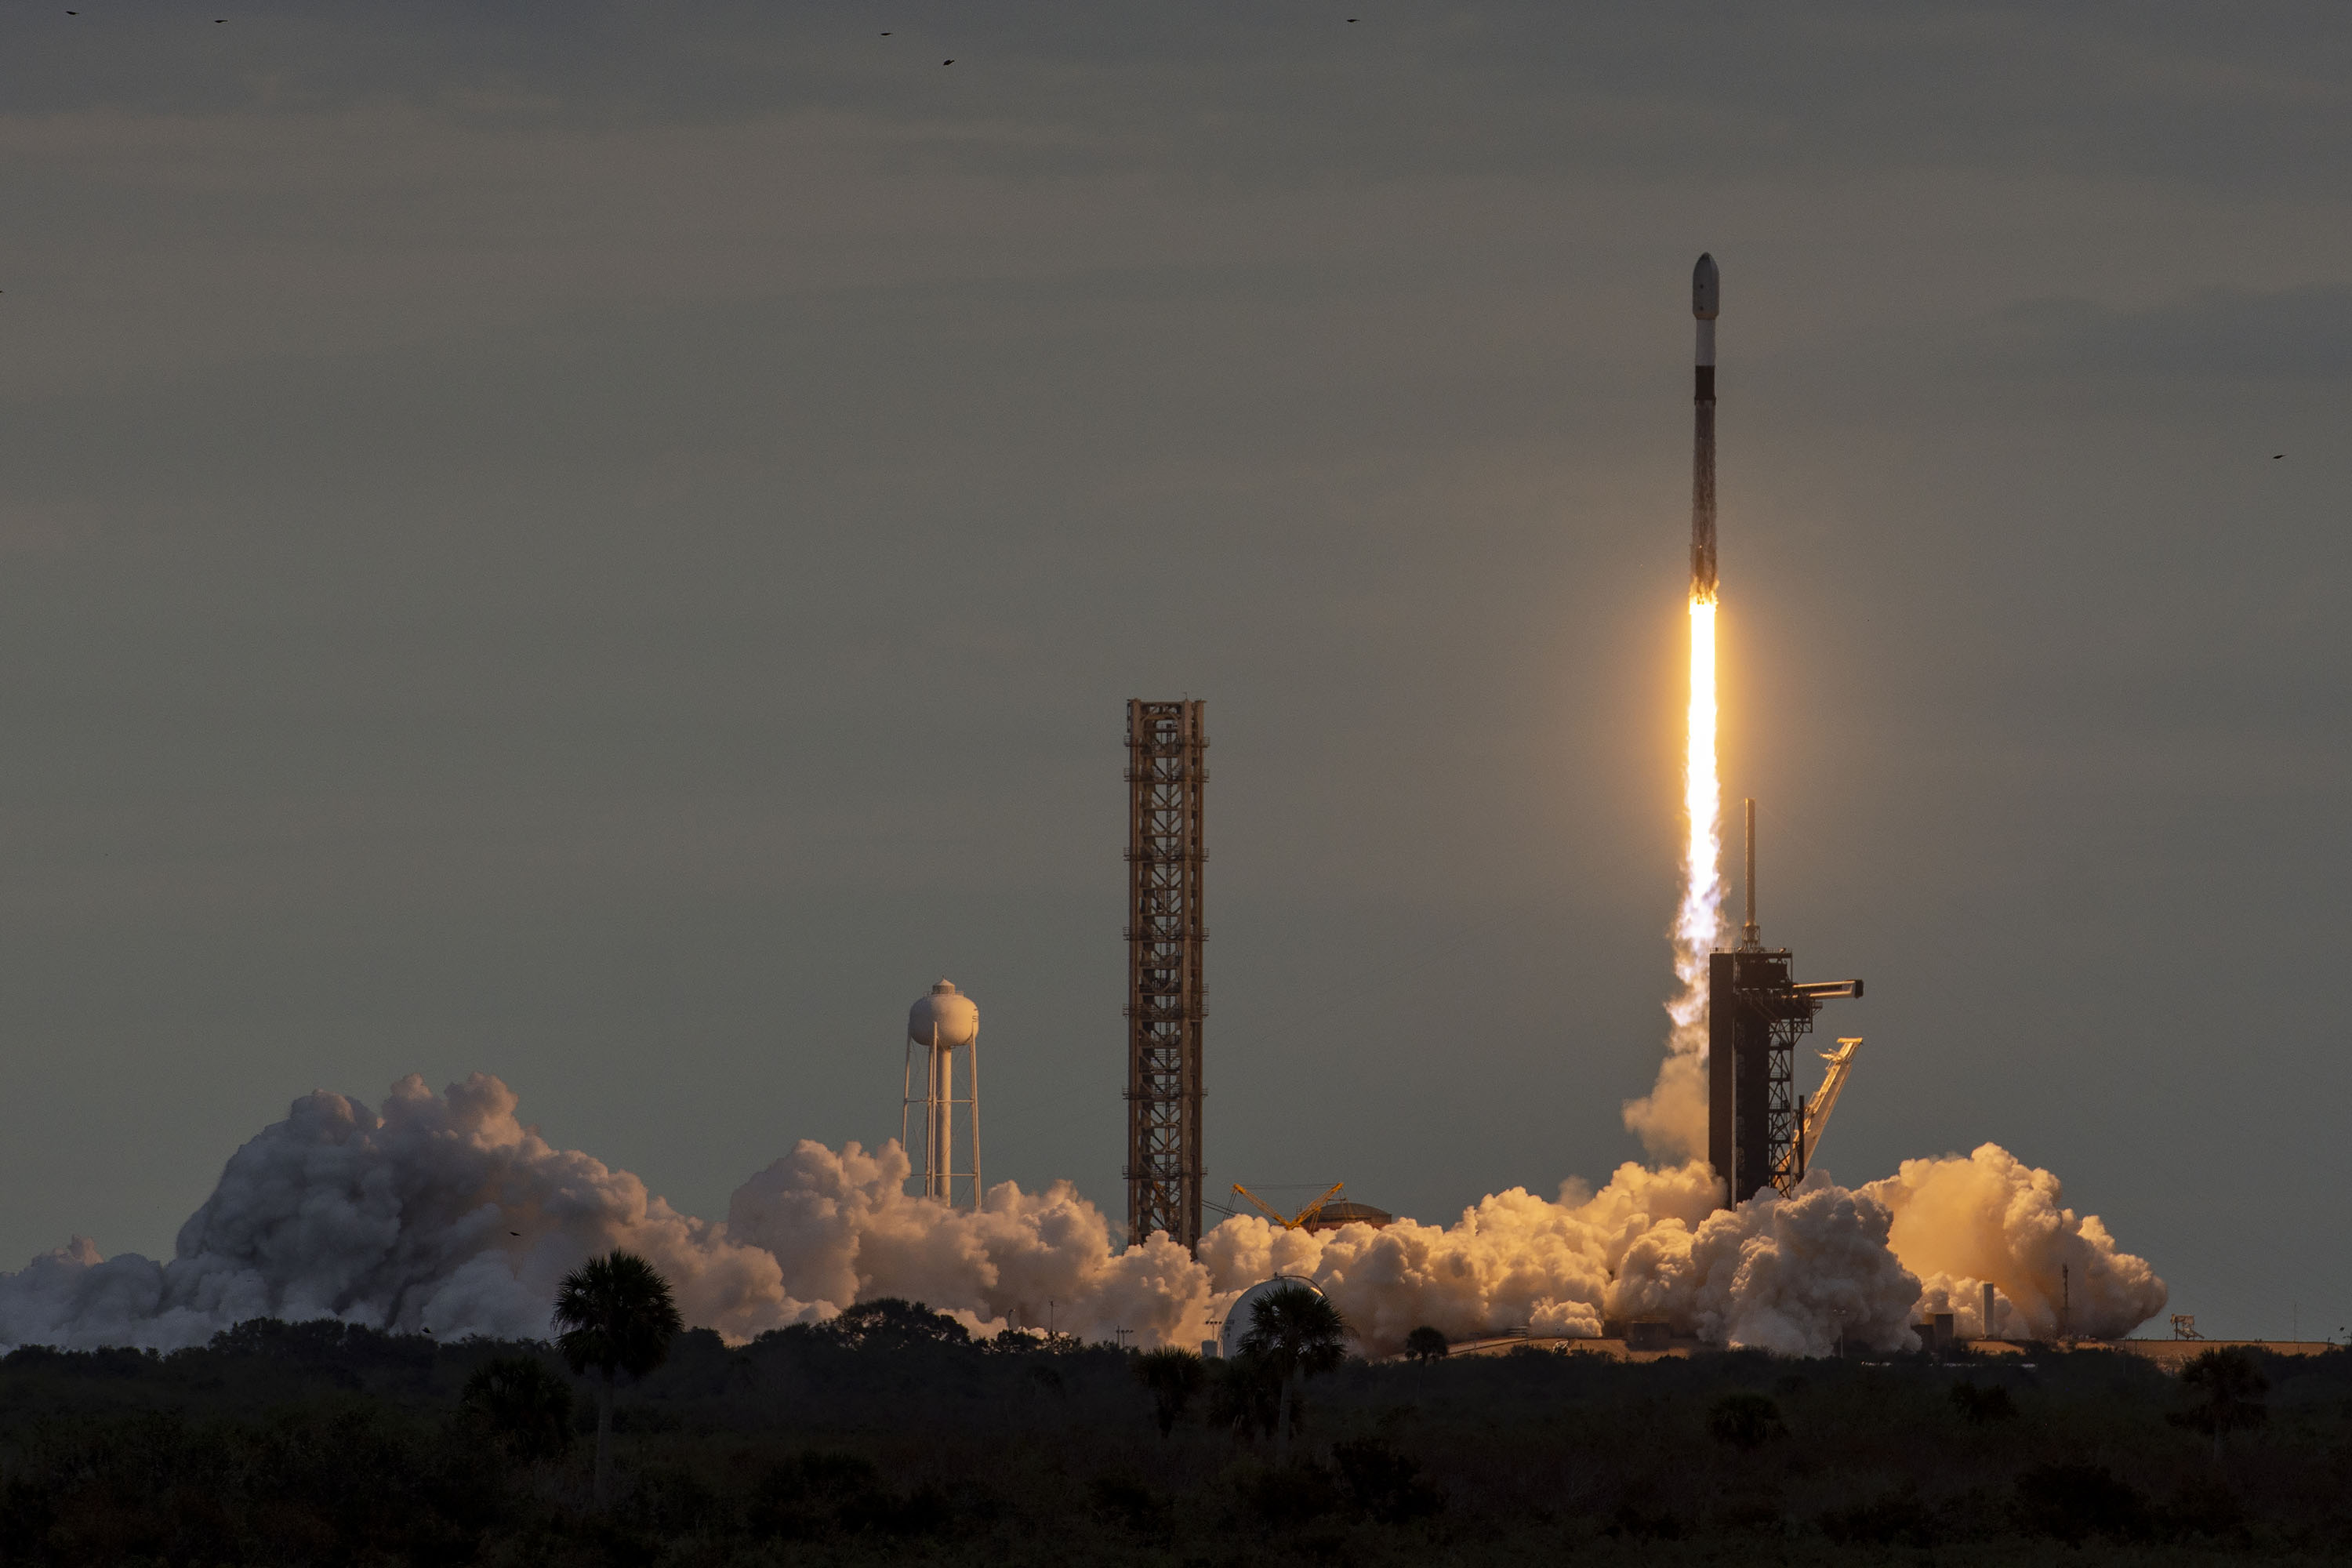 Falcon 9 wysyła w kosmos ukraińskiego nanosatelitę PolyITAN-HP-30 i ustanawia nowy rekord jednoczesnej orbity statku kosmicznego